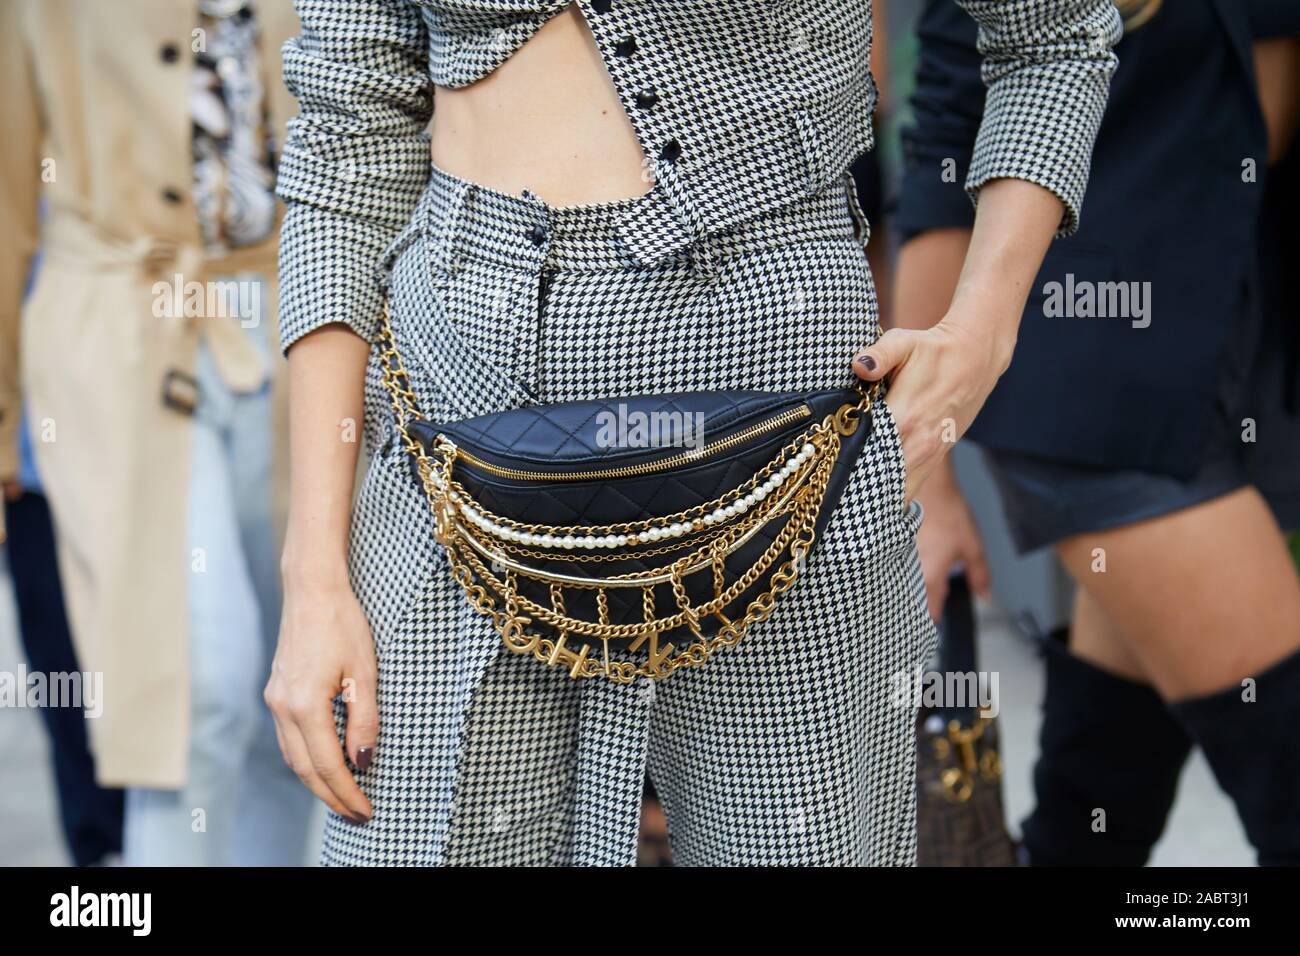 MILAN, ITALIE - 18 septembre 2019 : Femme avec pochette Chanel et pantalon avant de Annakiki houndstooth fashion show, Milan Fashion Week street style ? Banque D'Images